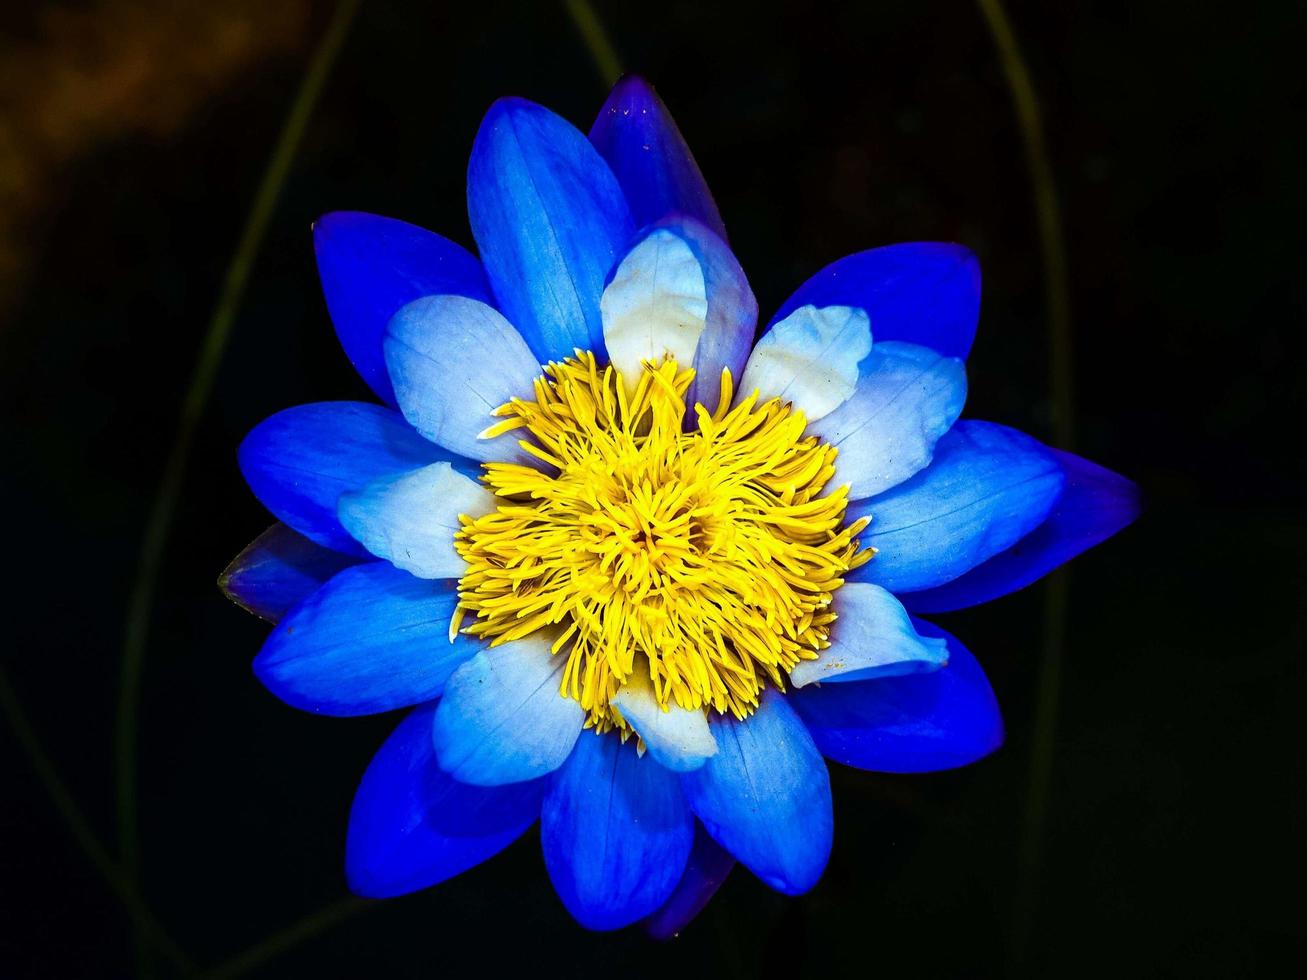 fleur de lotus dans la nature photo